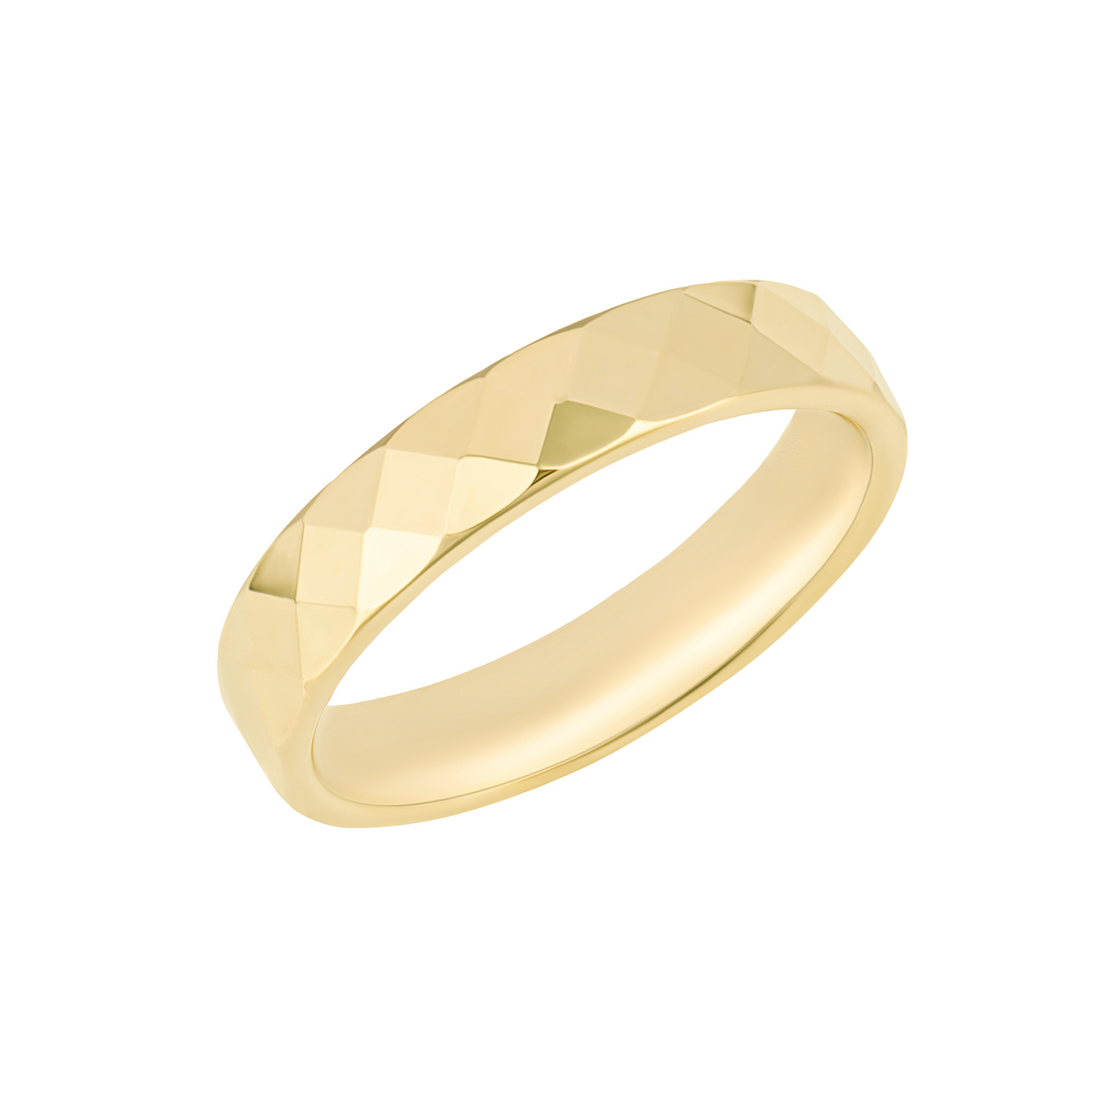 Hexagonal Textured Ring in 9ct Yellow Gold - Robert Anthony Jewellers, Edinburgh